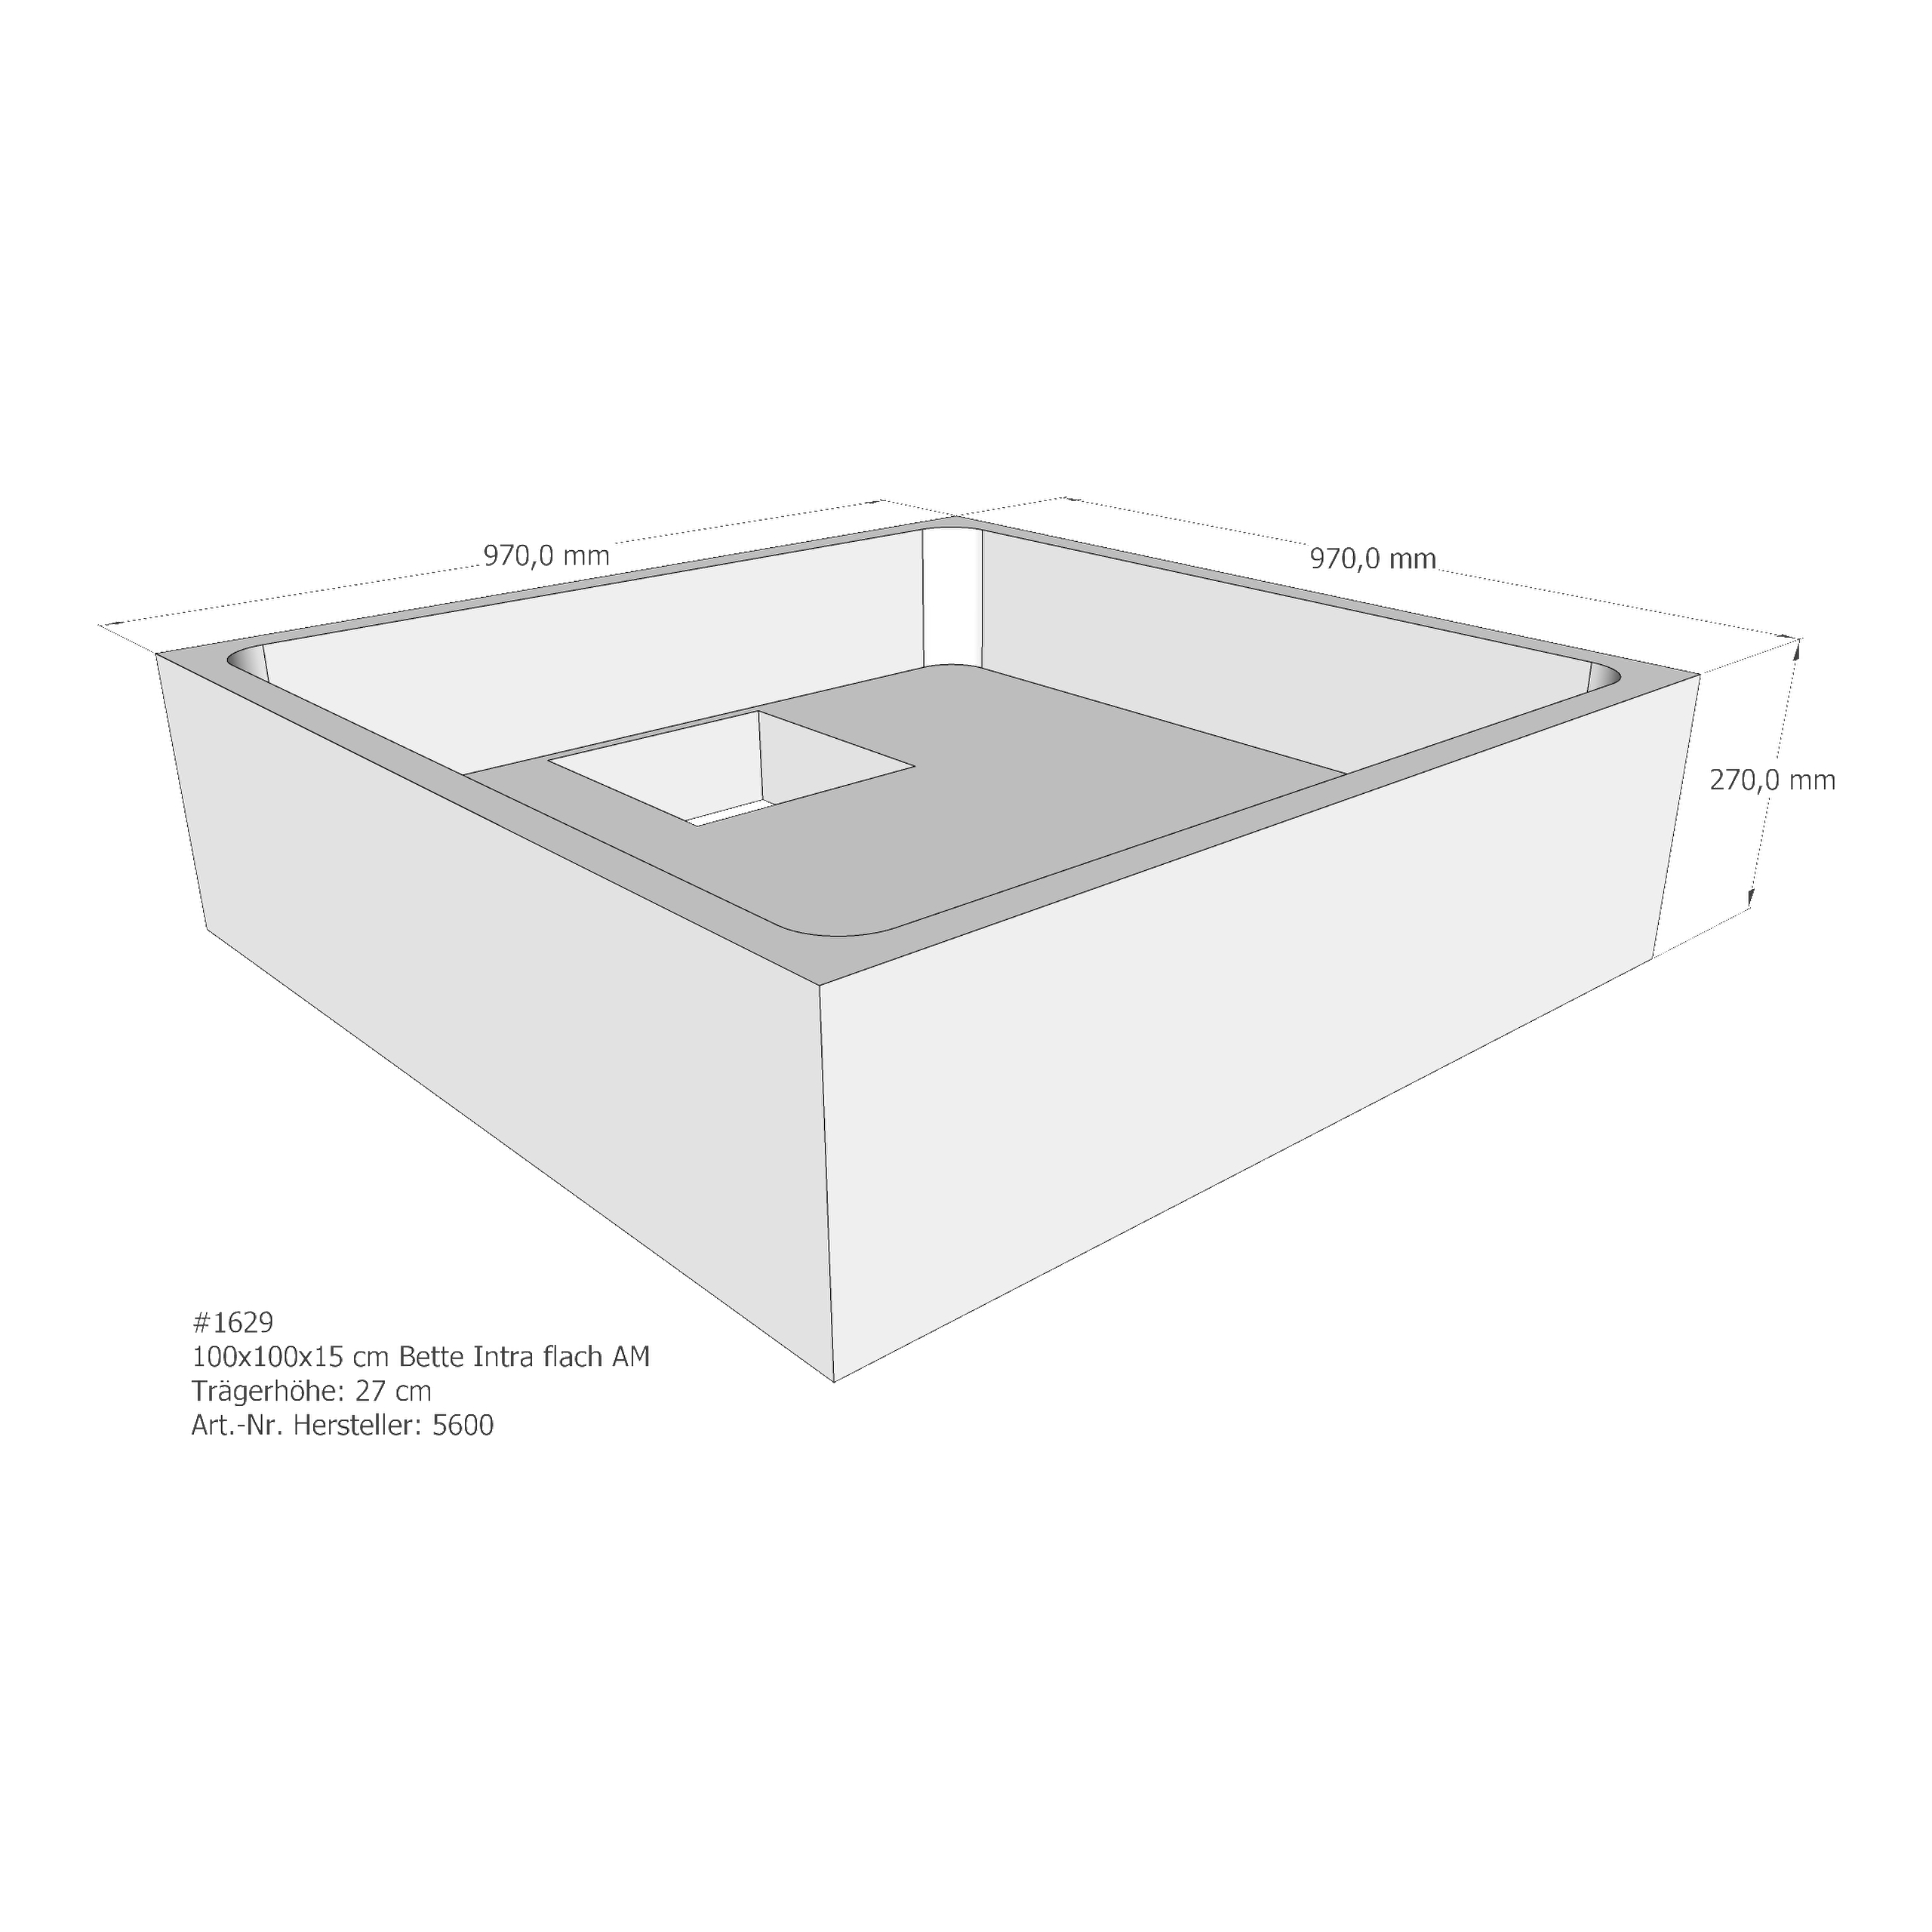 Duschwannenträger für Bette BetteQuinta (flach/Intra) 100 × 100 × 15 cm